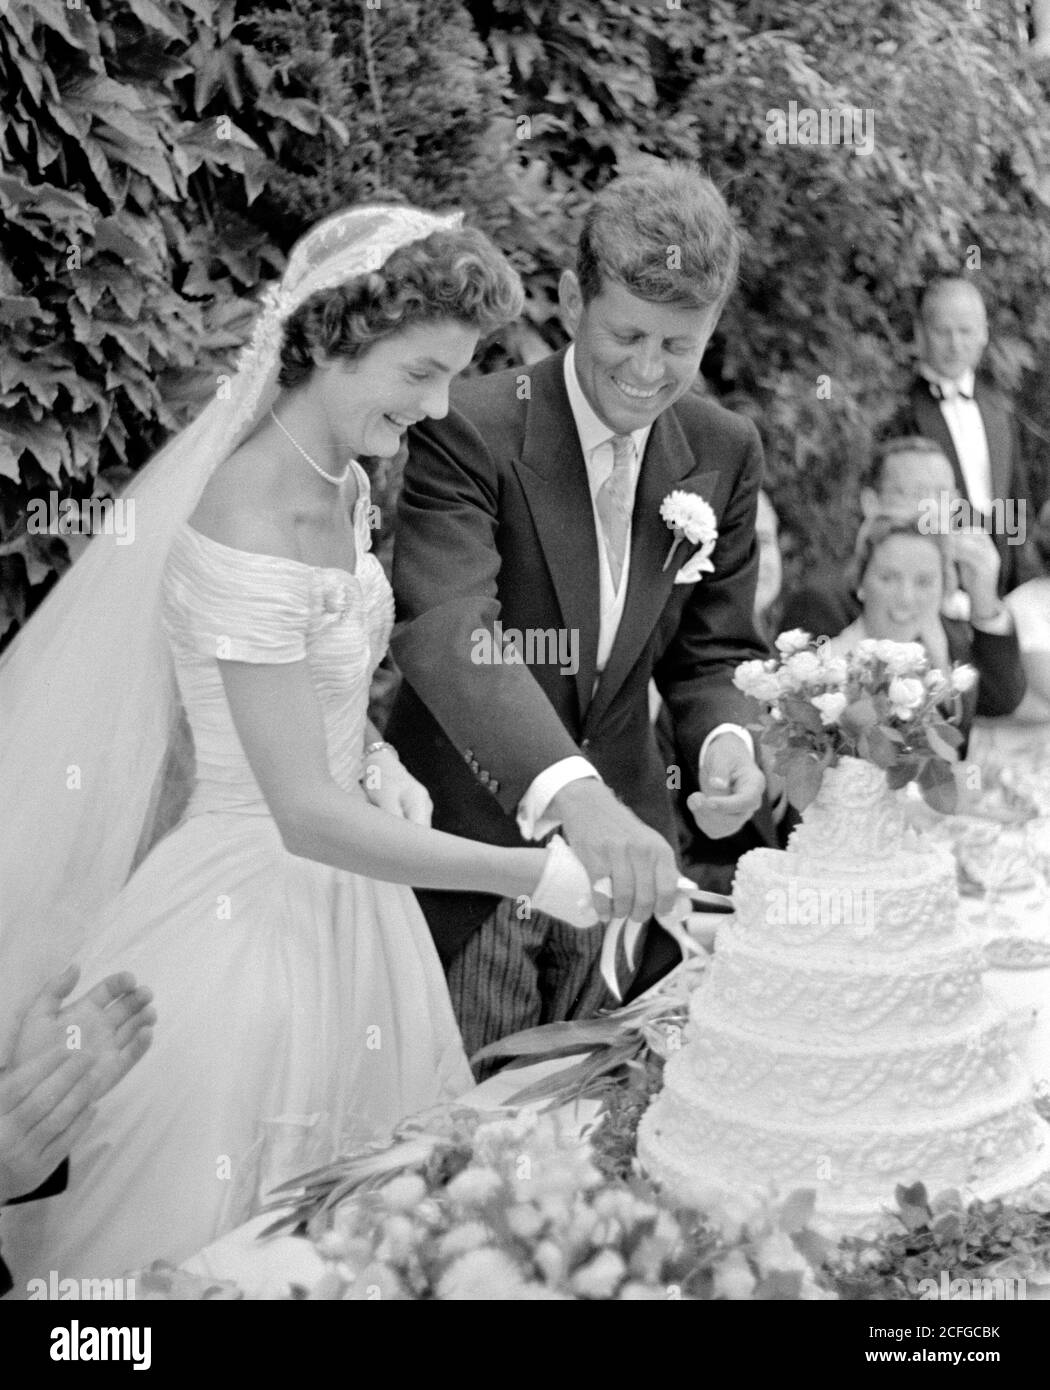 Le mariage du sénateur John F Kennedy à Jacqueline Bouvier, à Newport, dans le Rhode Island, le 12 septembre 1953. Le couple coupant le gâteau à leur réception de mariage. Banque D'Images